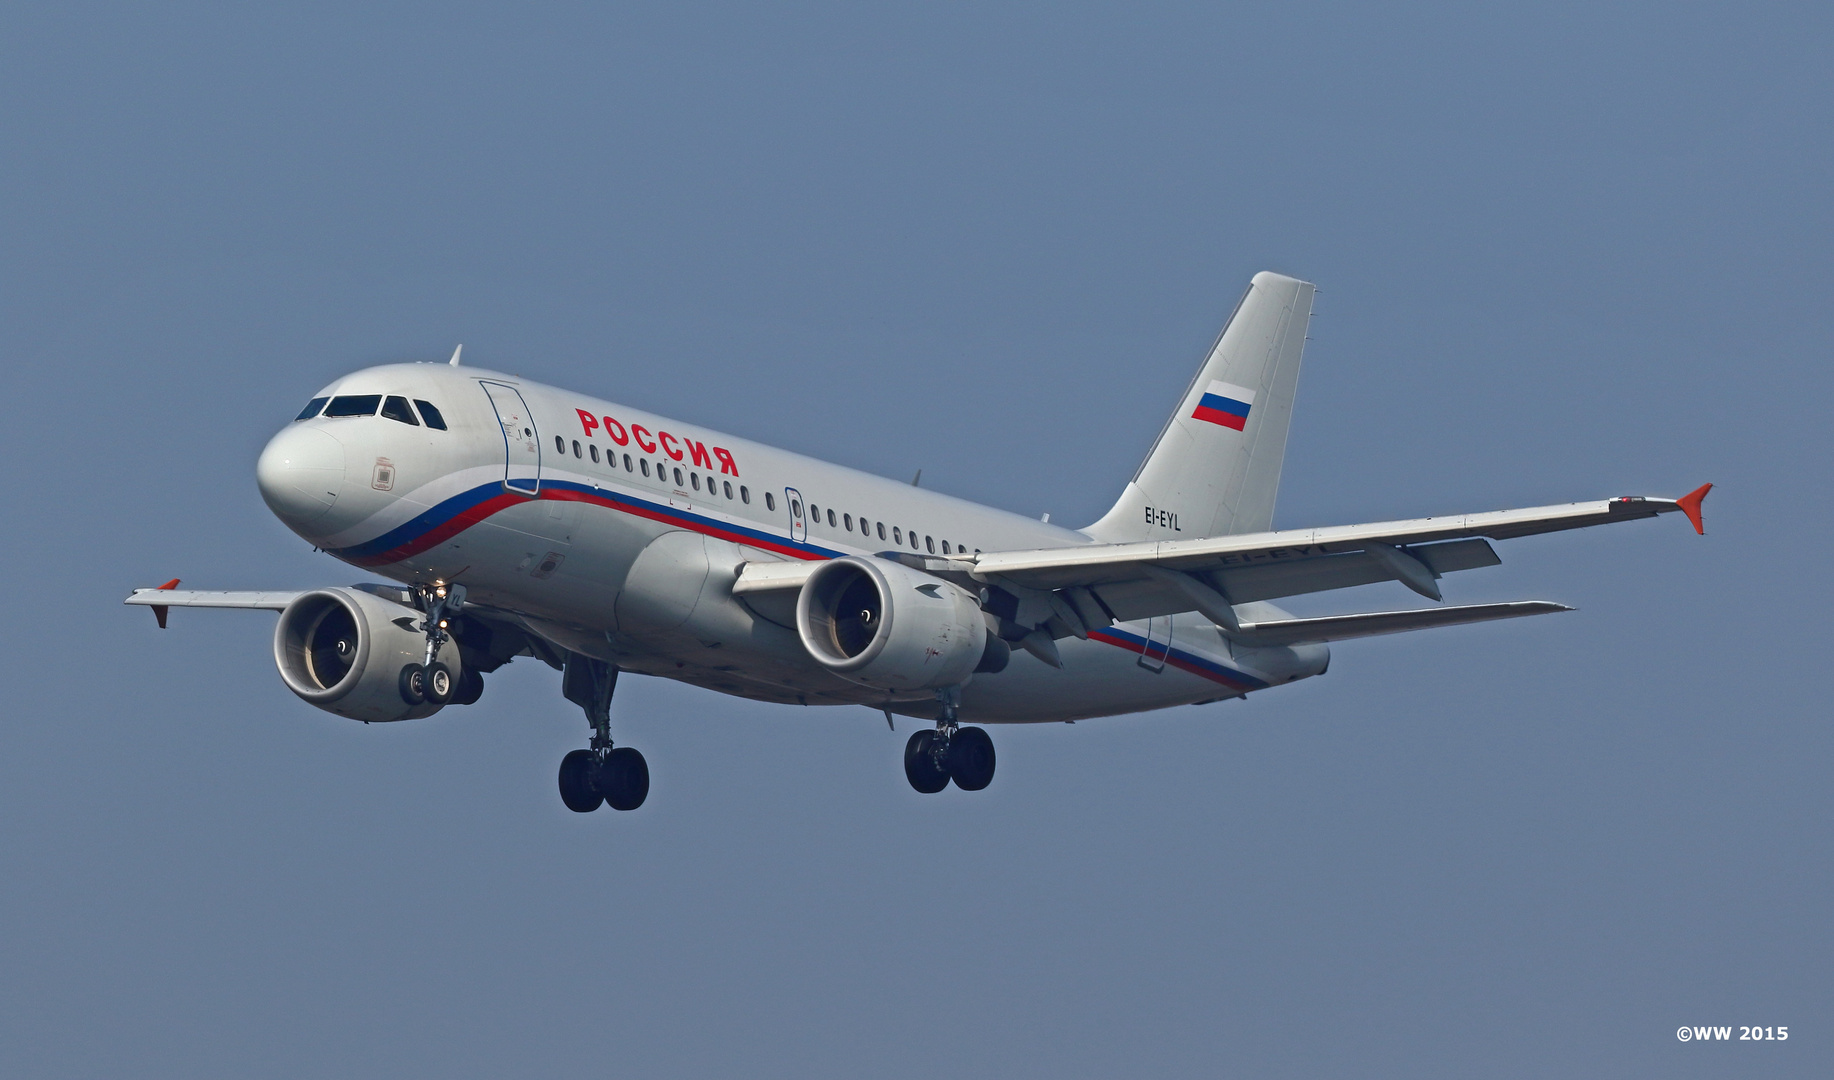 Rossiya Airlines